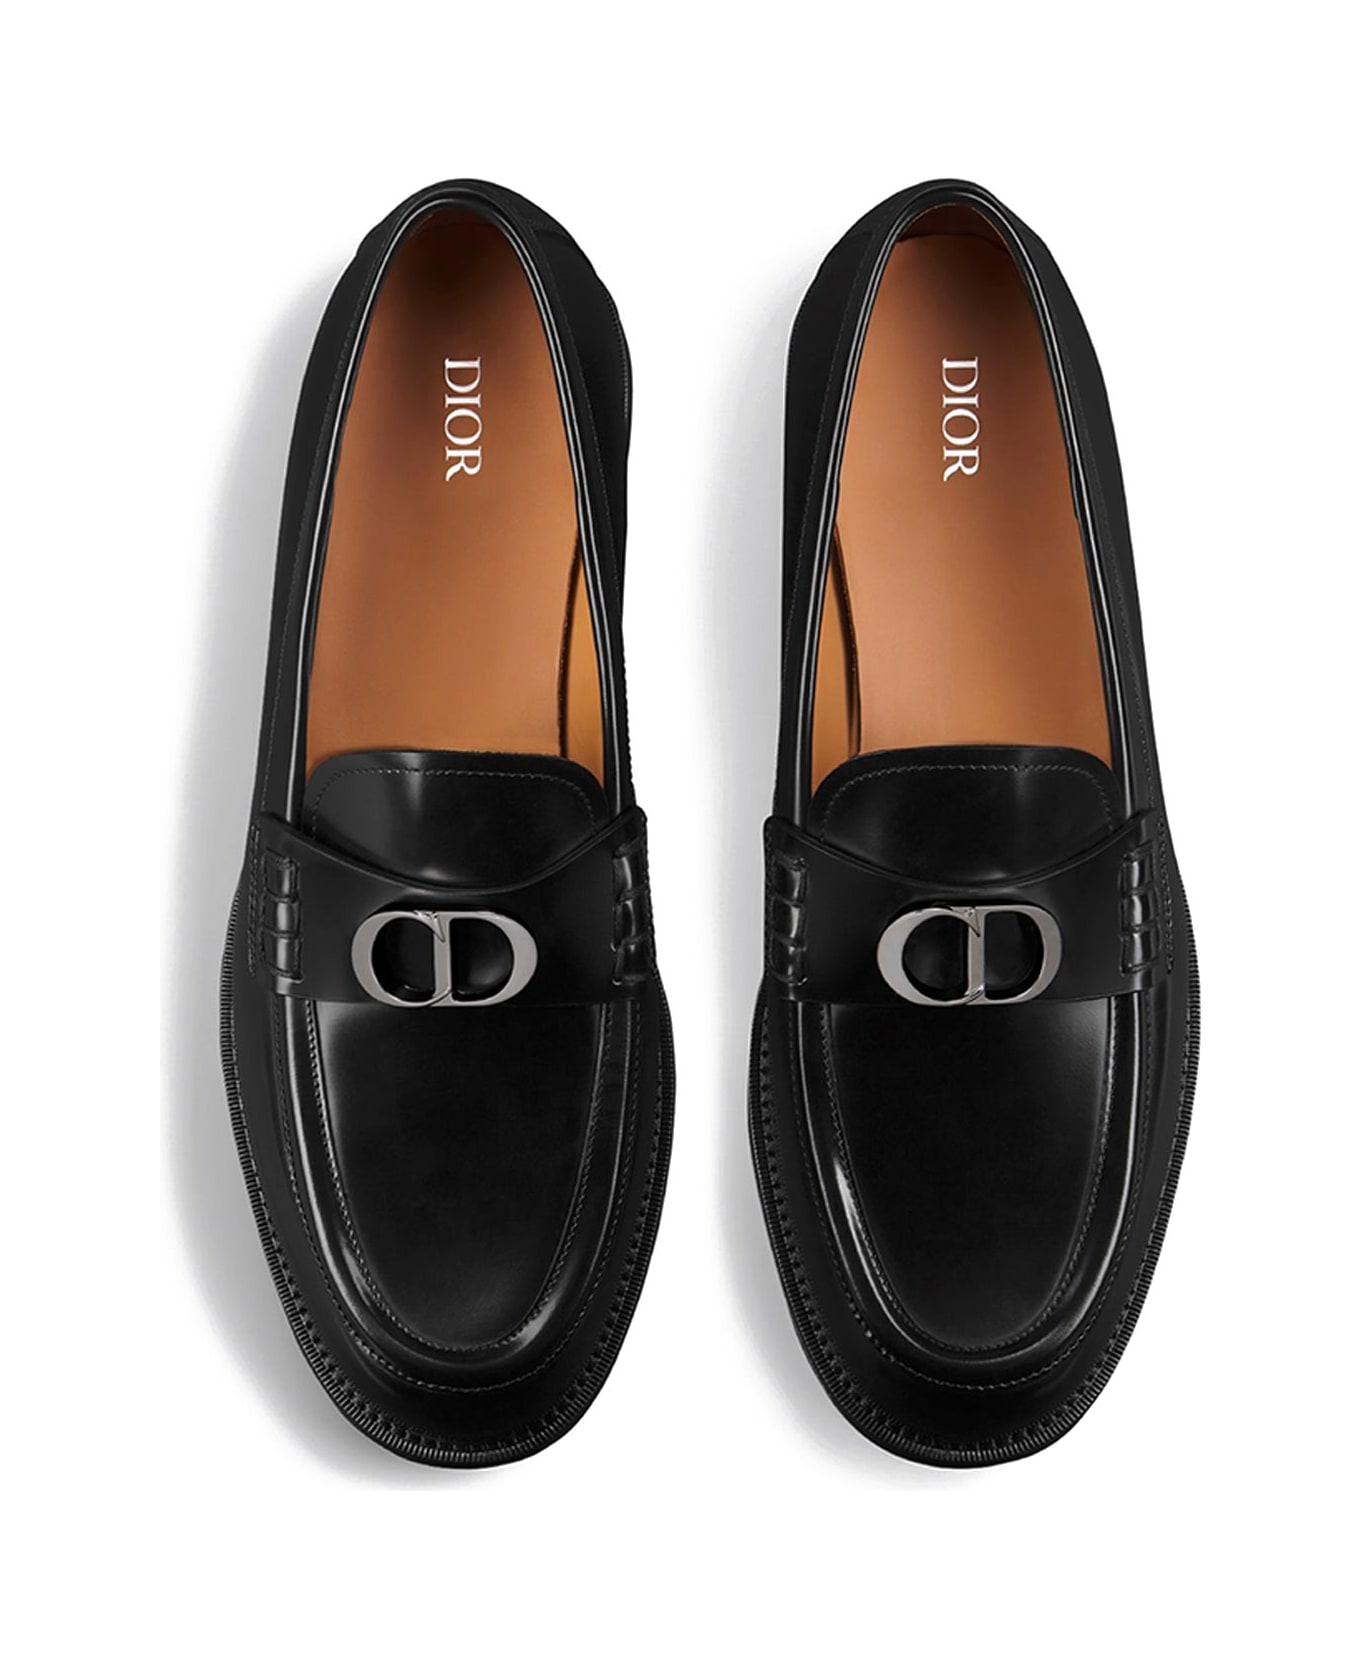 Dior Homme Loafers - DARK GREY